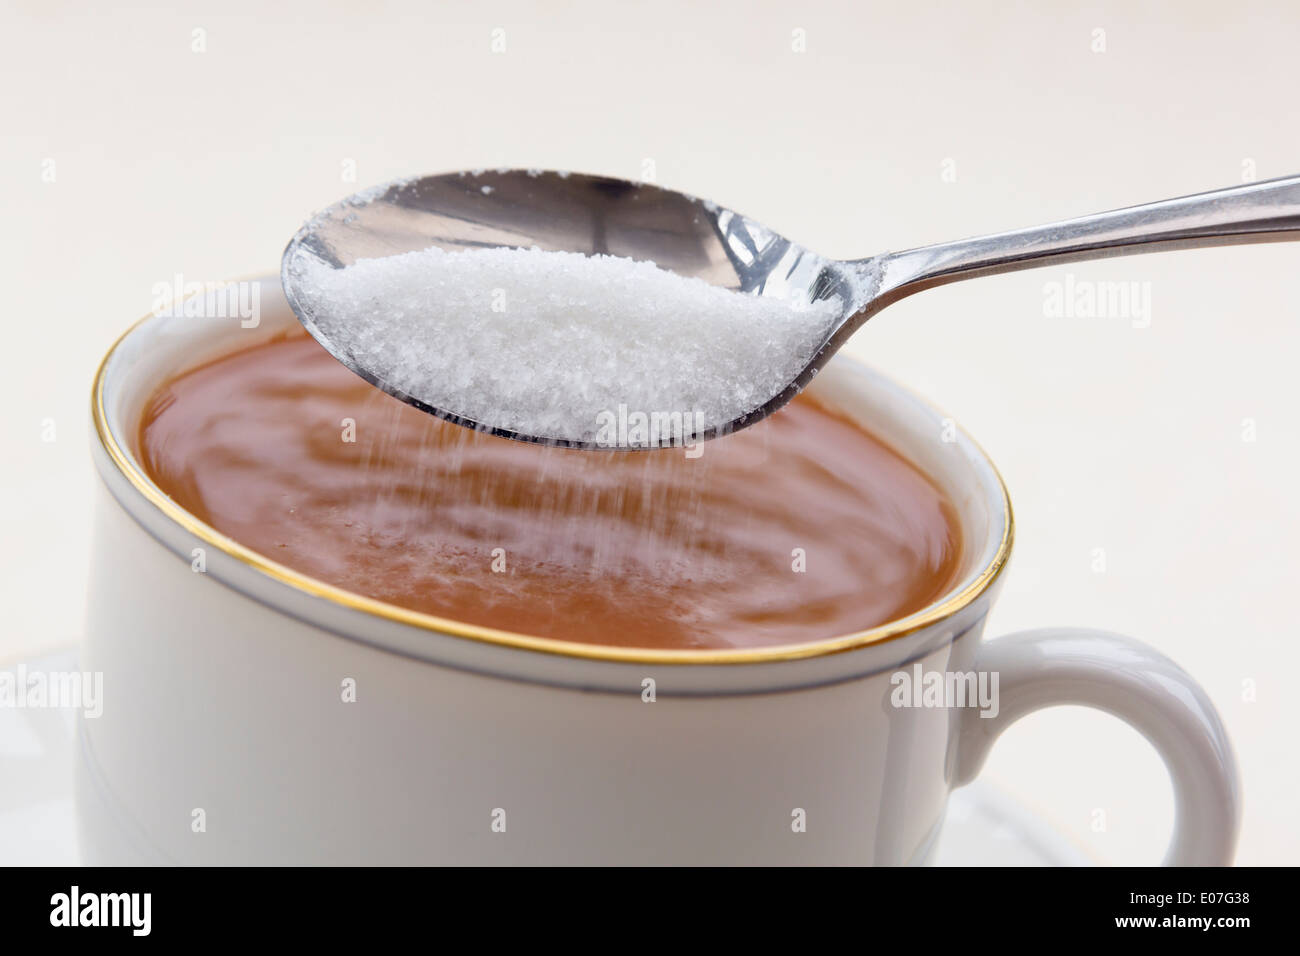 Aggiungere un cucchiaio di quello dello zucchero bianco cristallizzato in una tazza di tè in una tazzina può contribuire al diabete e calorie in eccesso il guadagno di peso. Inghilterra, Regno Unito Foto Stock